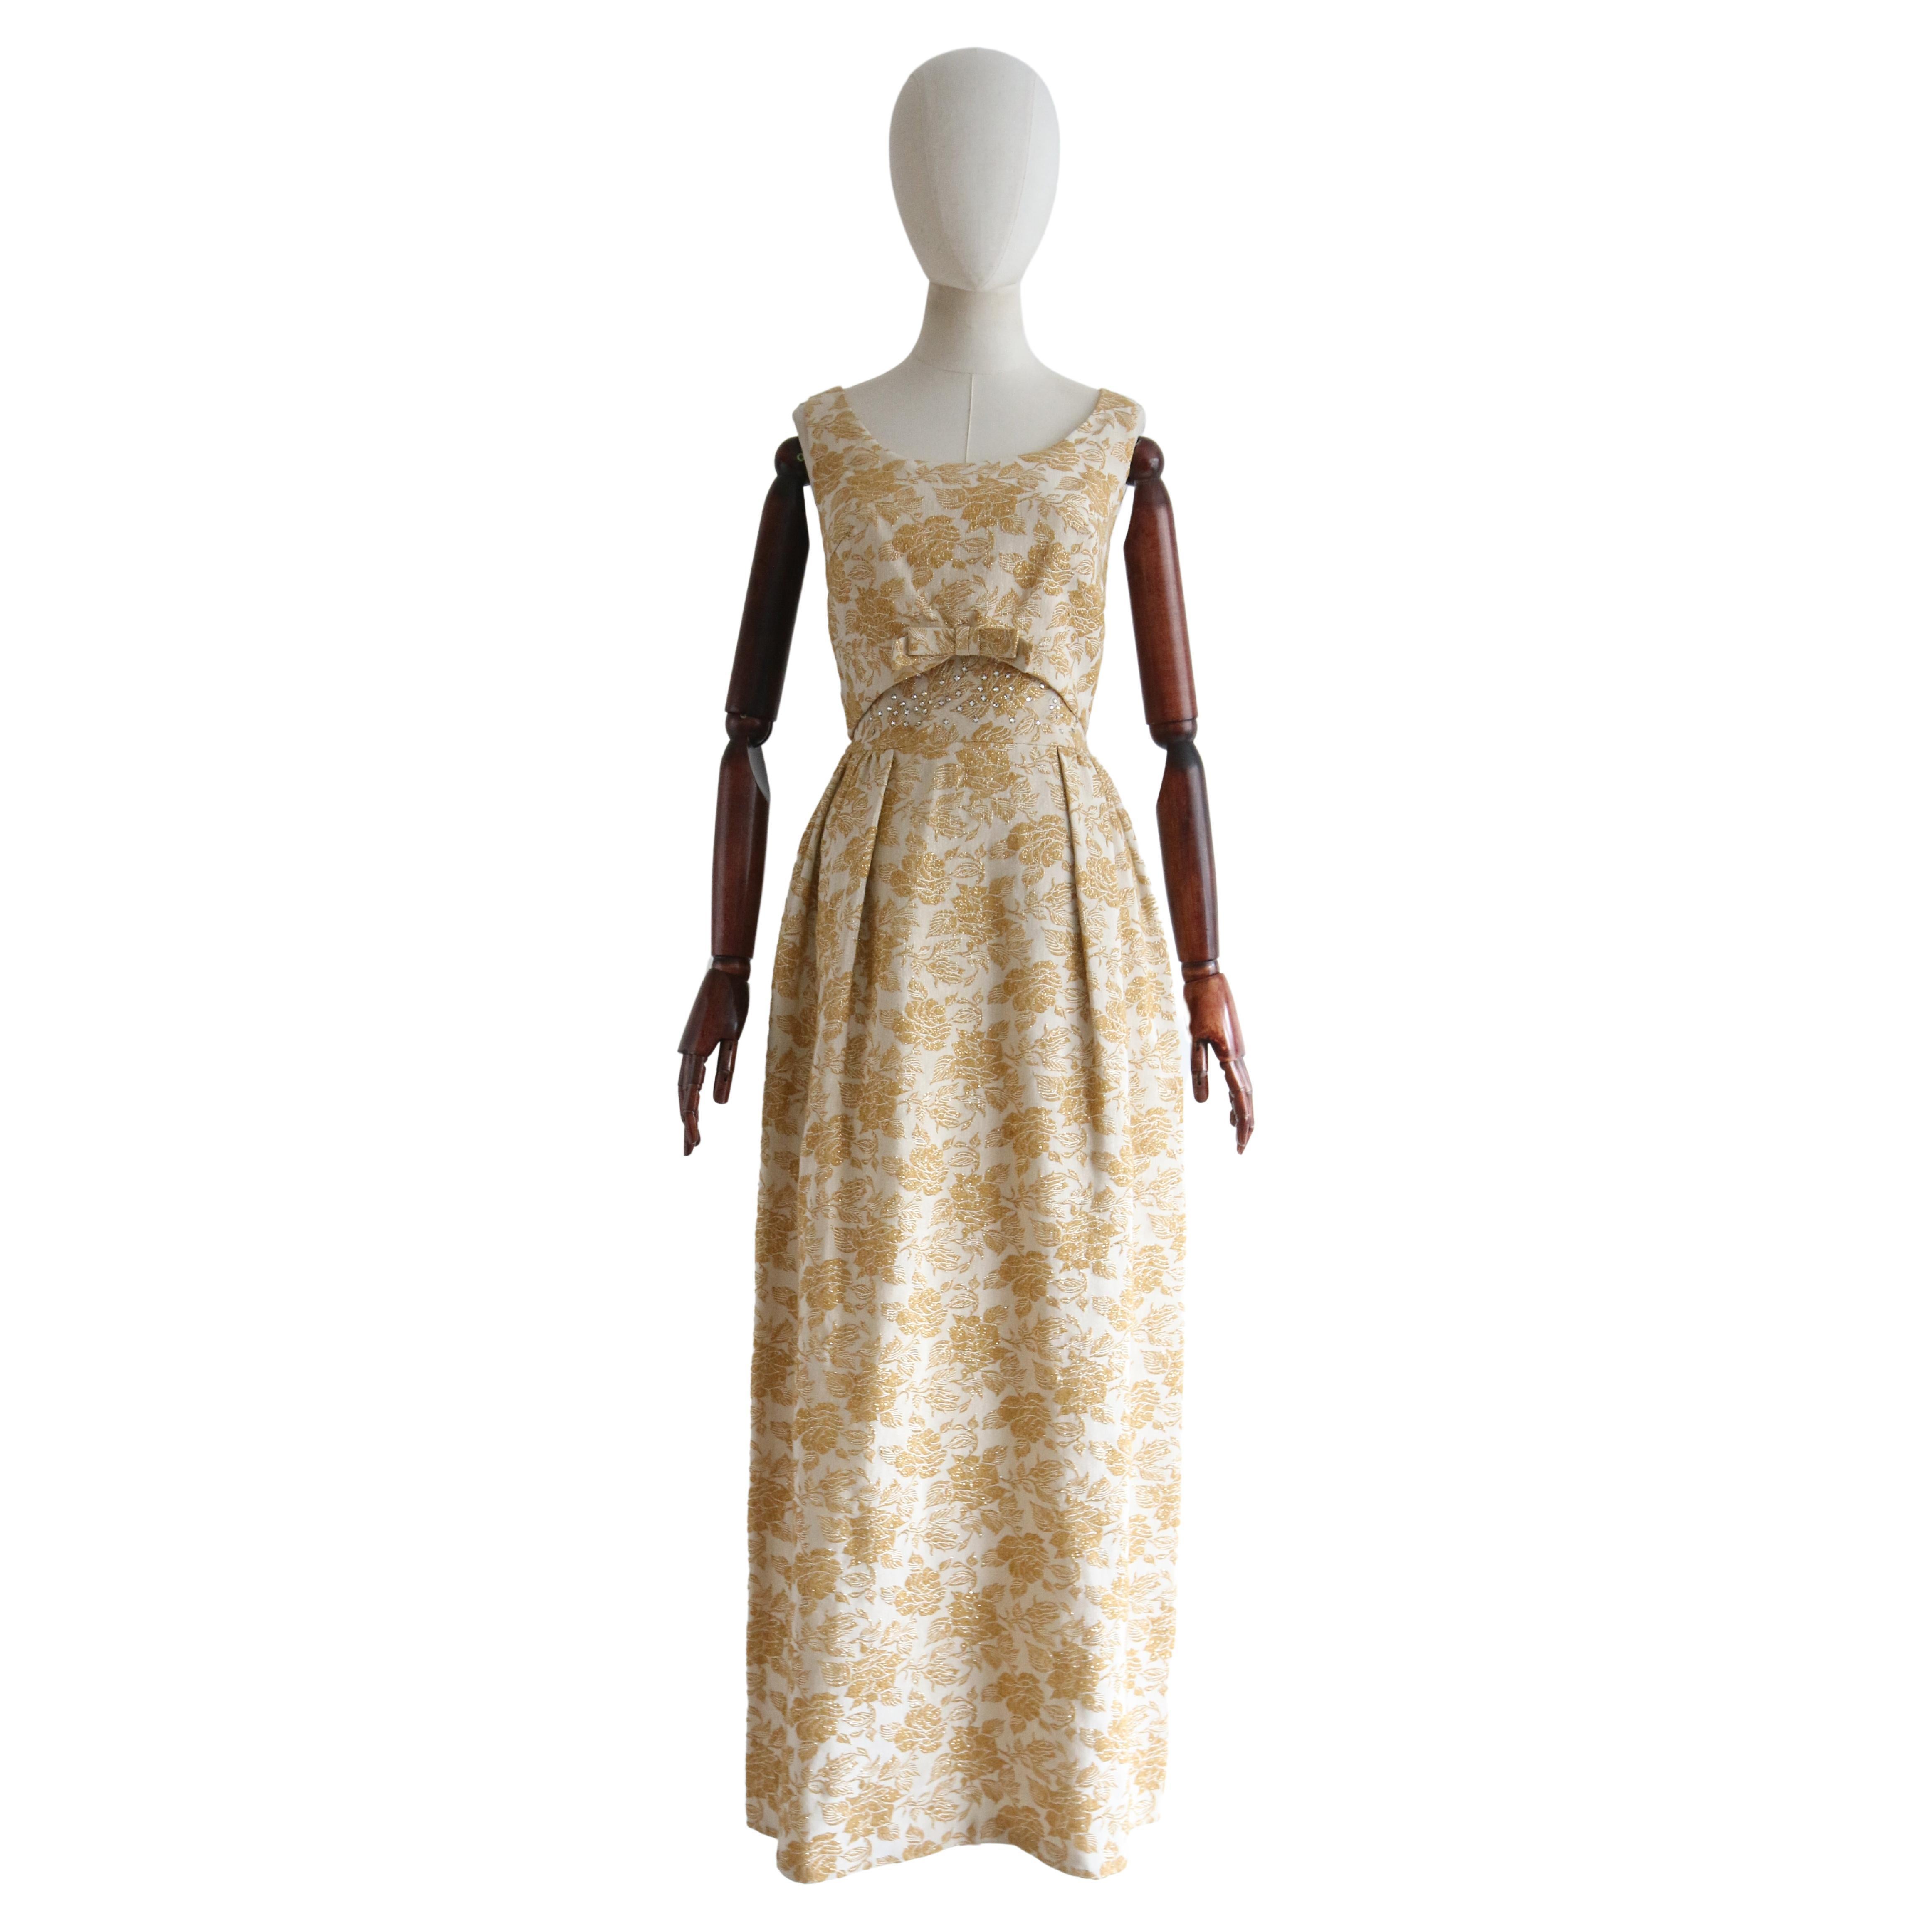  Robe de soirée vintage des années 1960 en brocart de lurex doré et strass GB 8 US 4